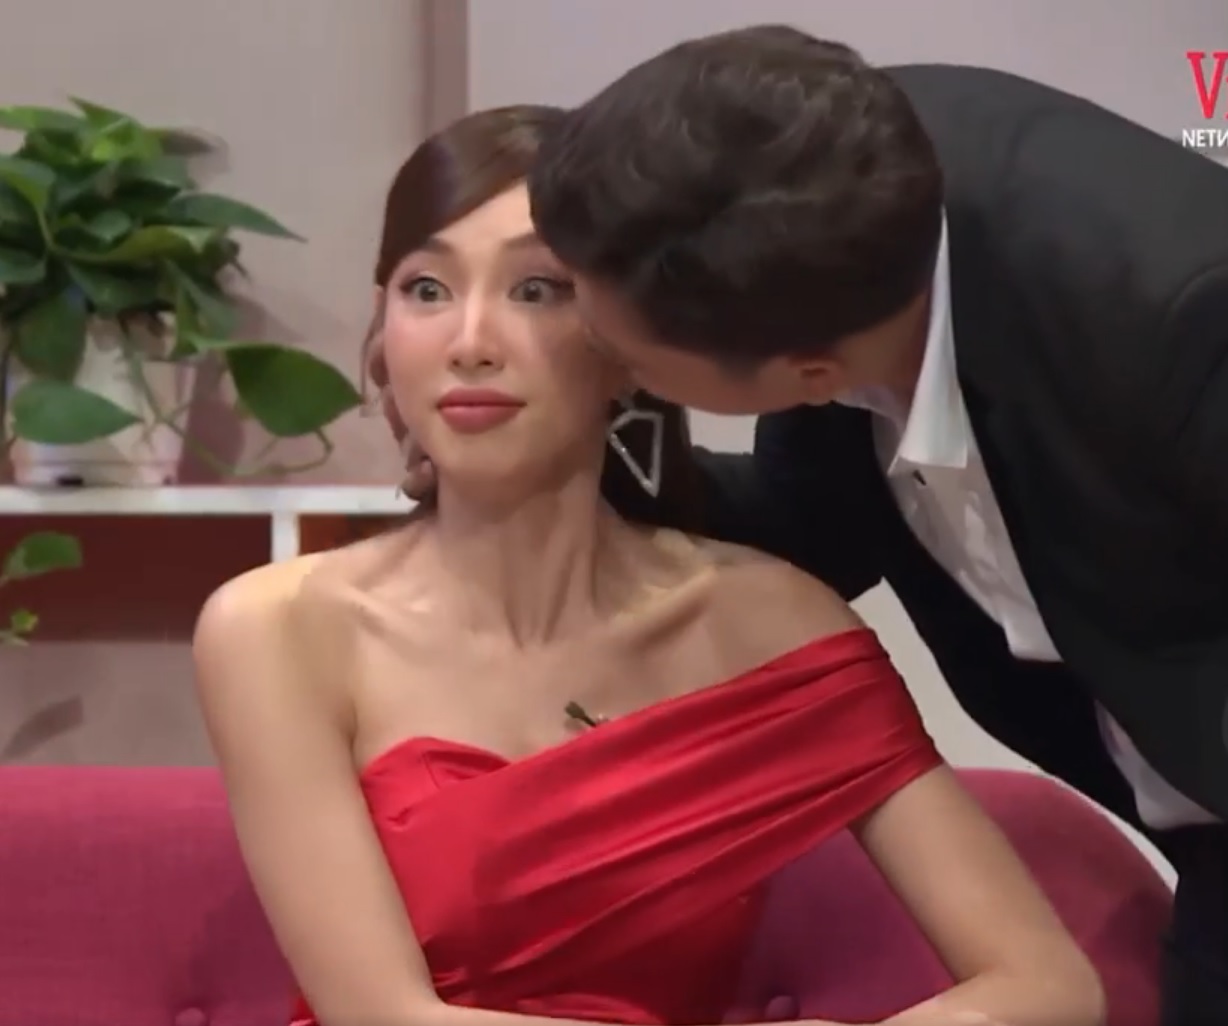 Dân mạng phản ứng gay gắt hành động 'đòi hôn má' của Trường Giang với Hoa hậu Thùy Tiên: 'Không tôn trọng vợ gì hết' - Ảnh 3